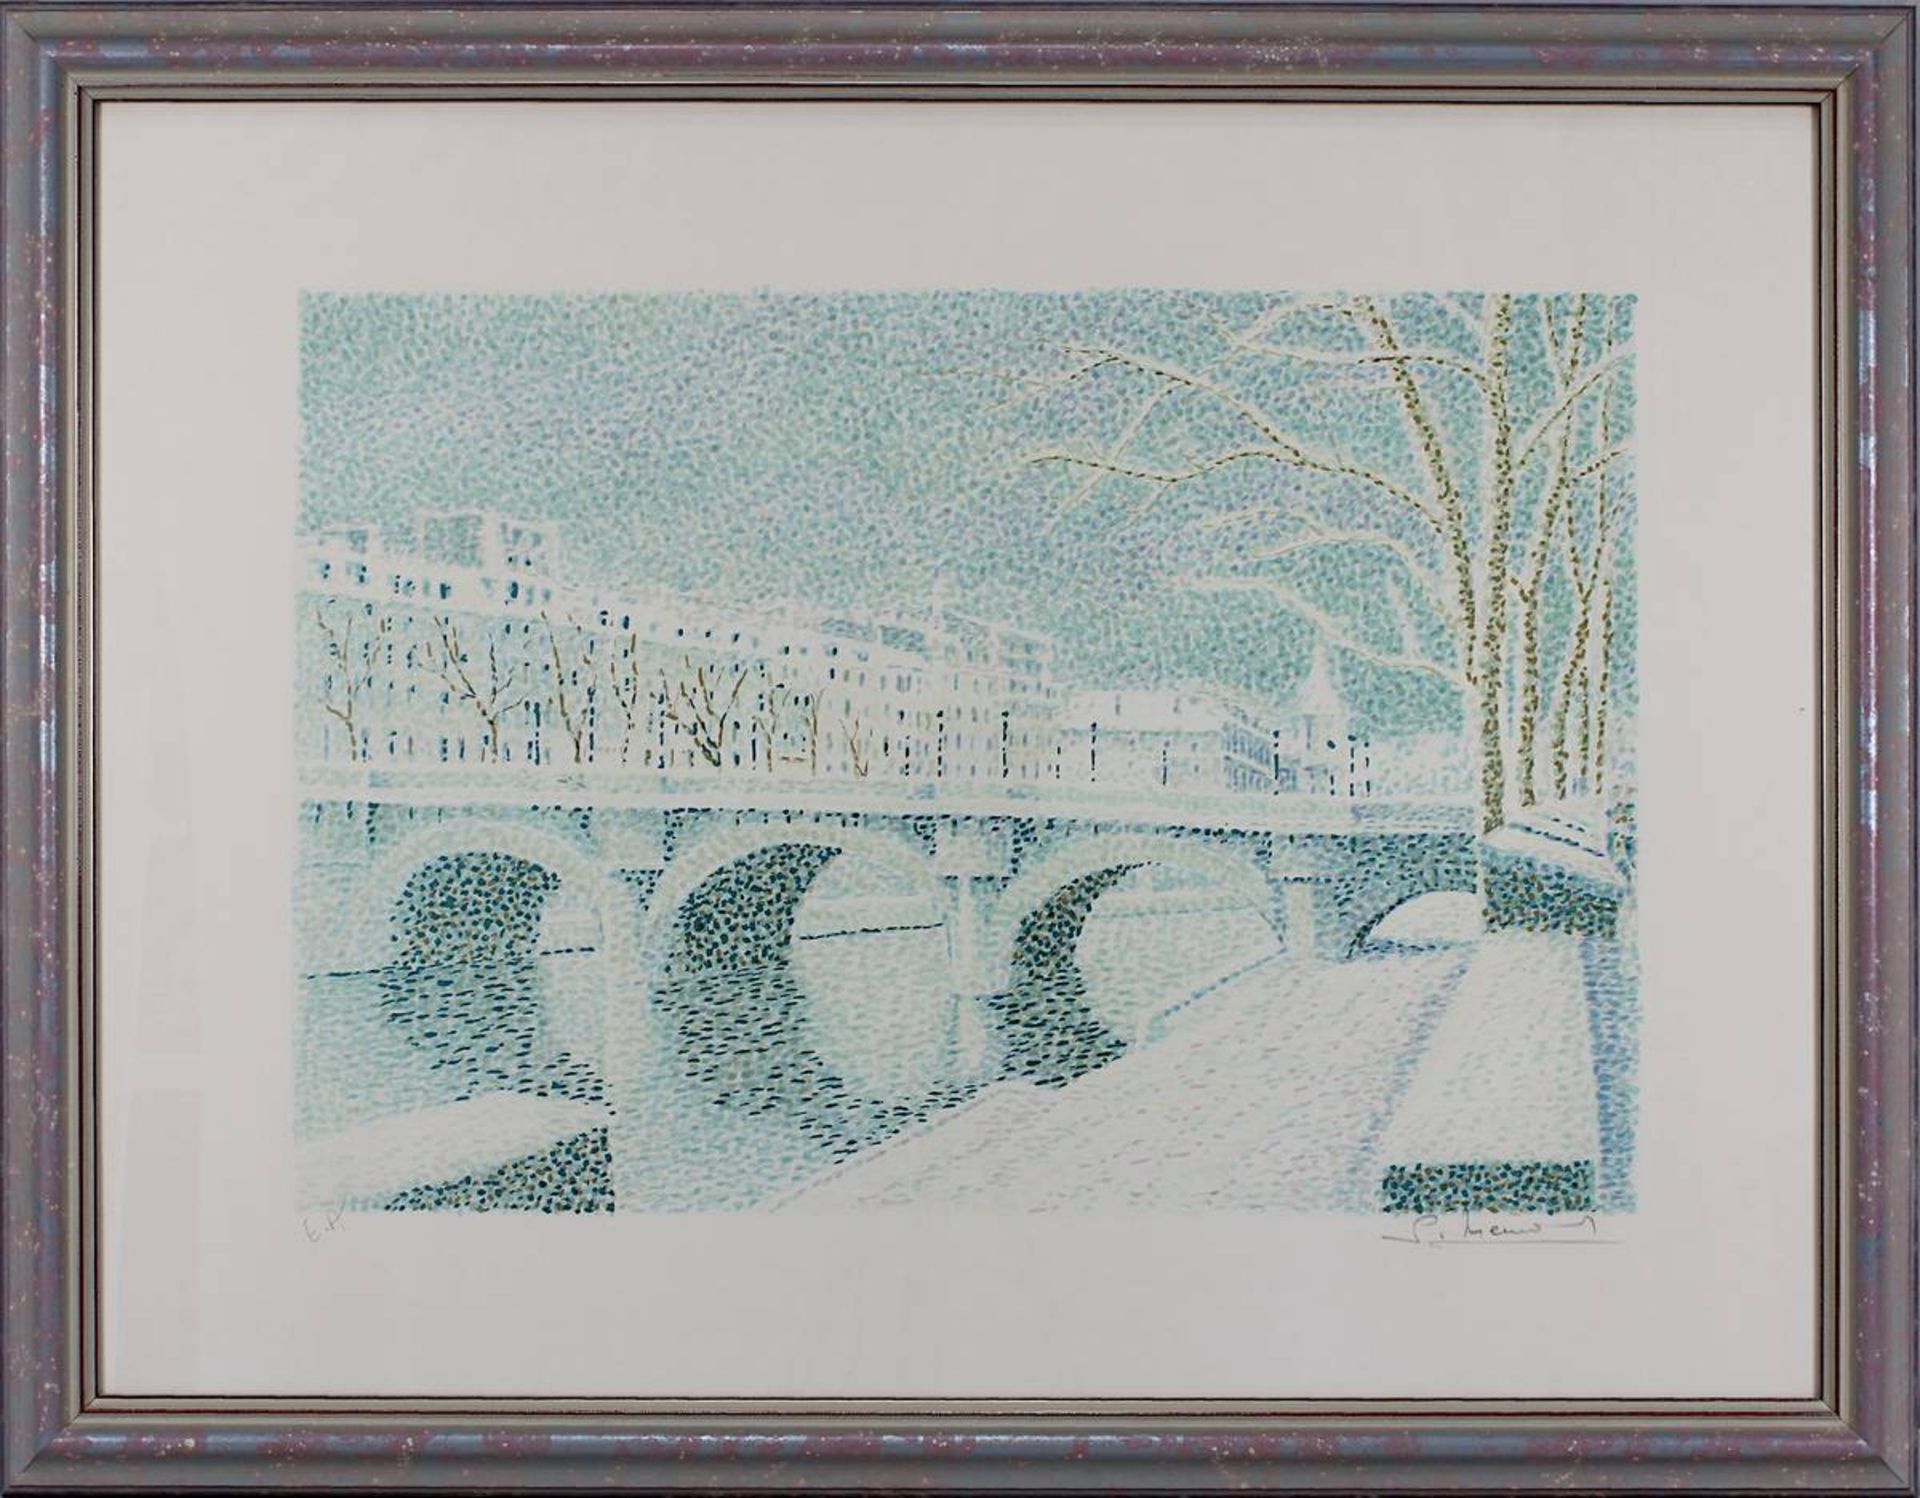 Mendjisky, Serge (Paris 1929 - 2017 Paris), Flussufer mit Bogenbrücke, wohl Seineufer in Paris,